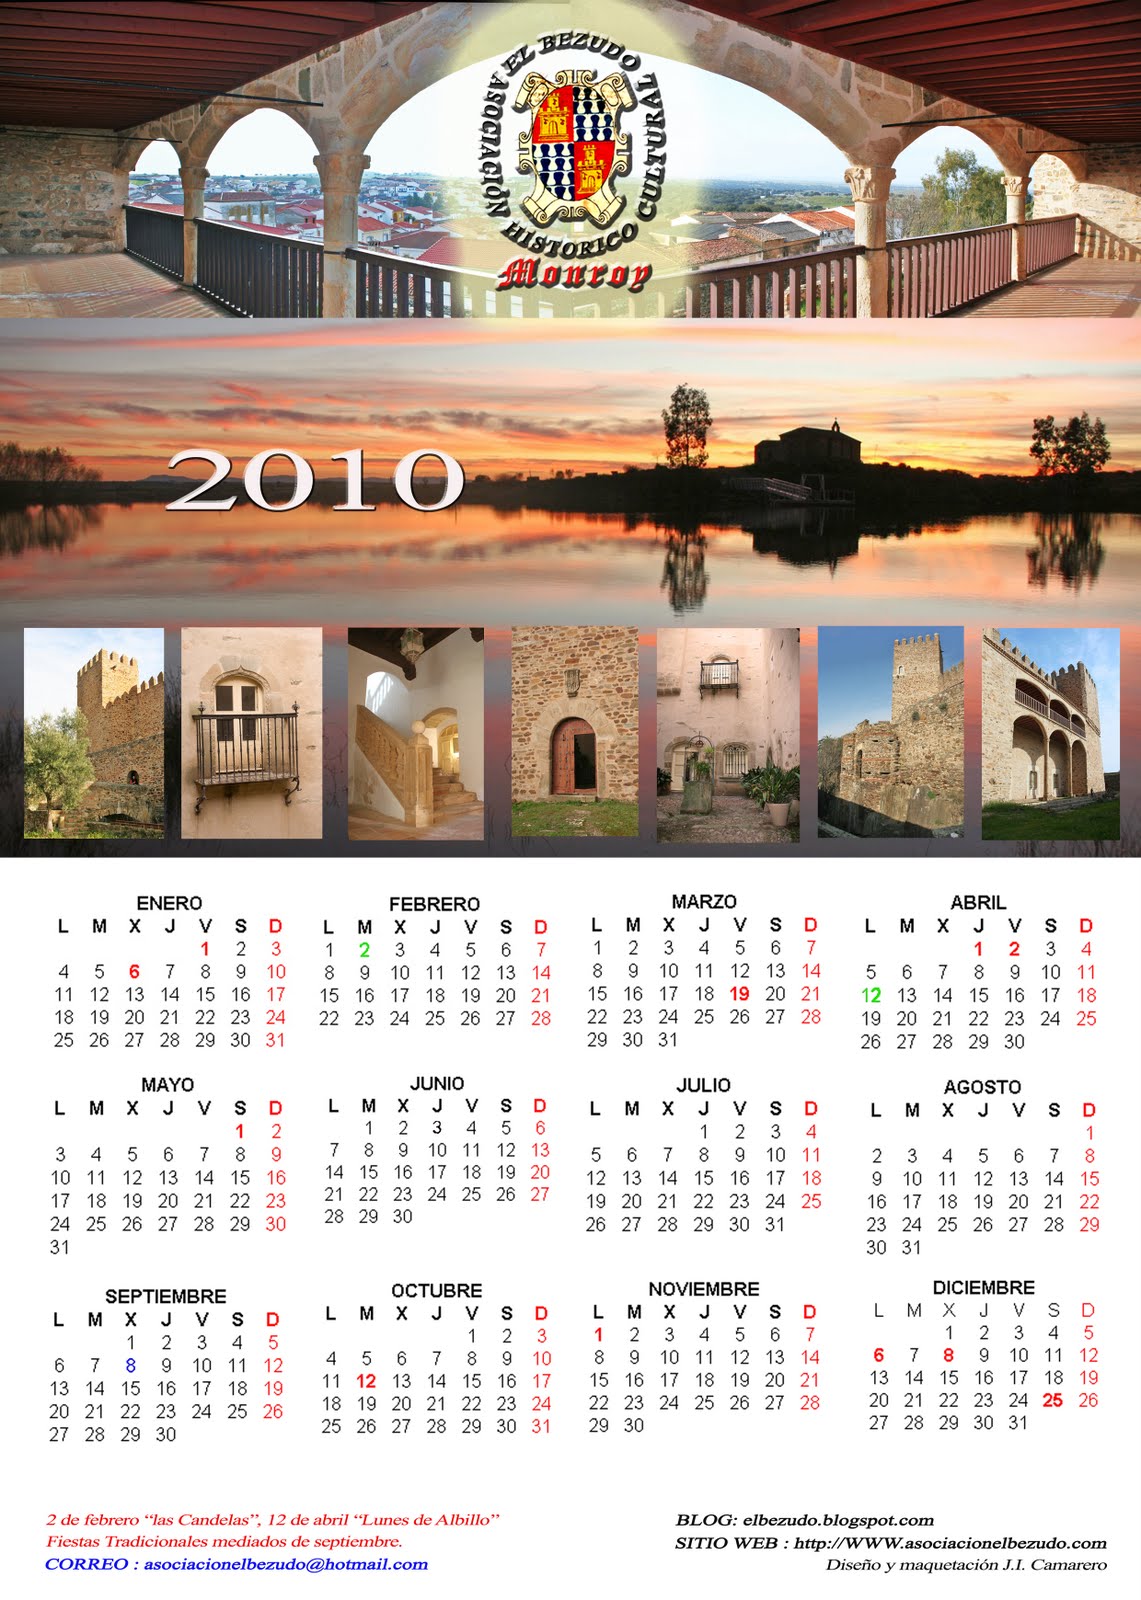 [calendario+bezudo+2010-1.jpg]